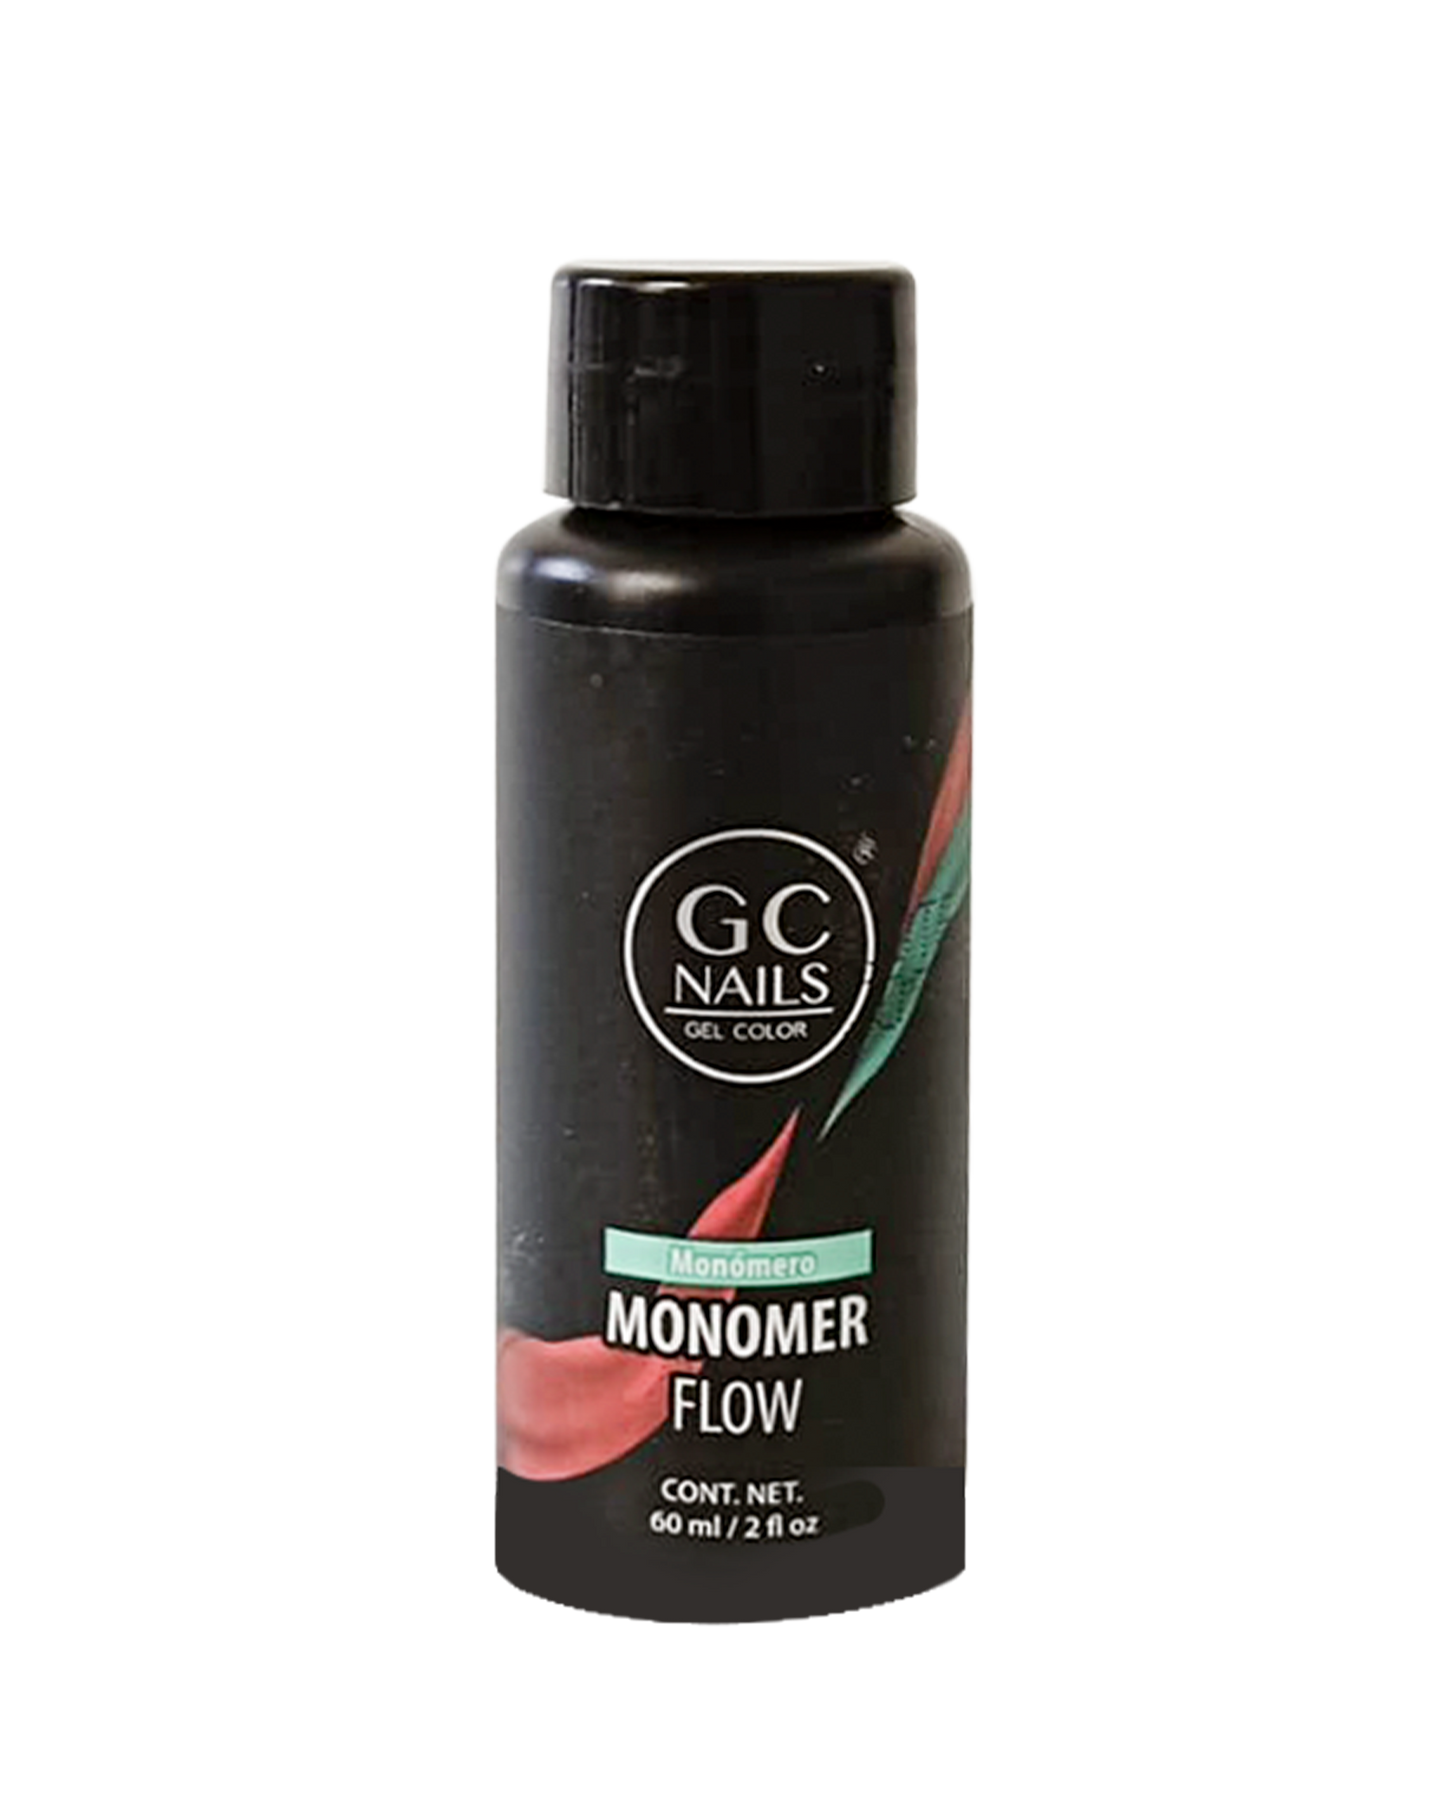 MONOMERO GC FLOW 60 ml 2OZ